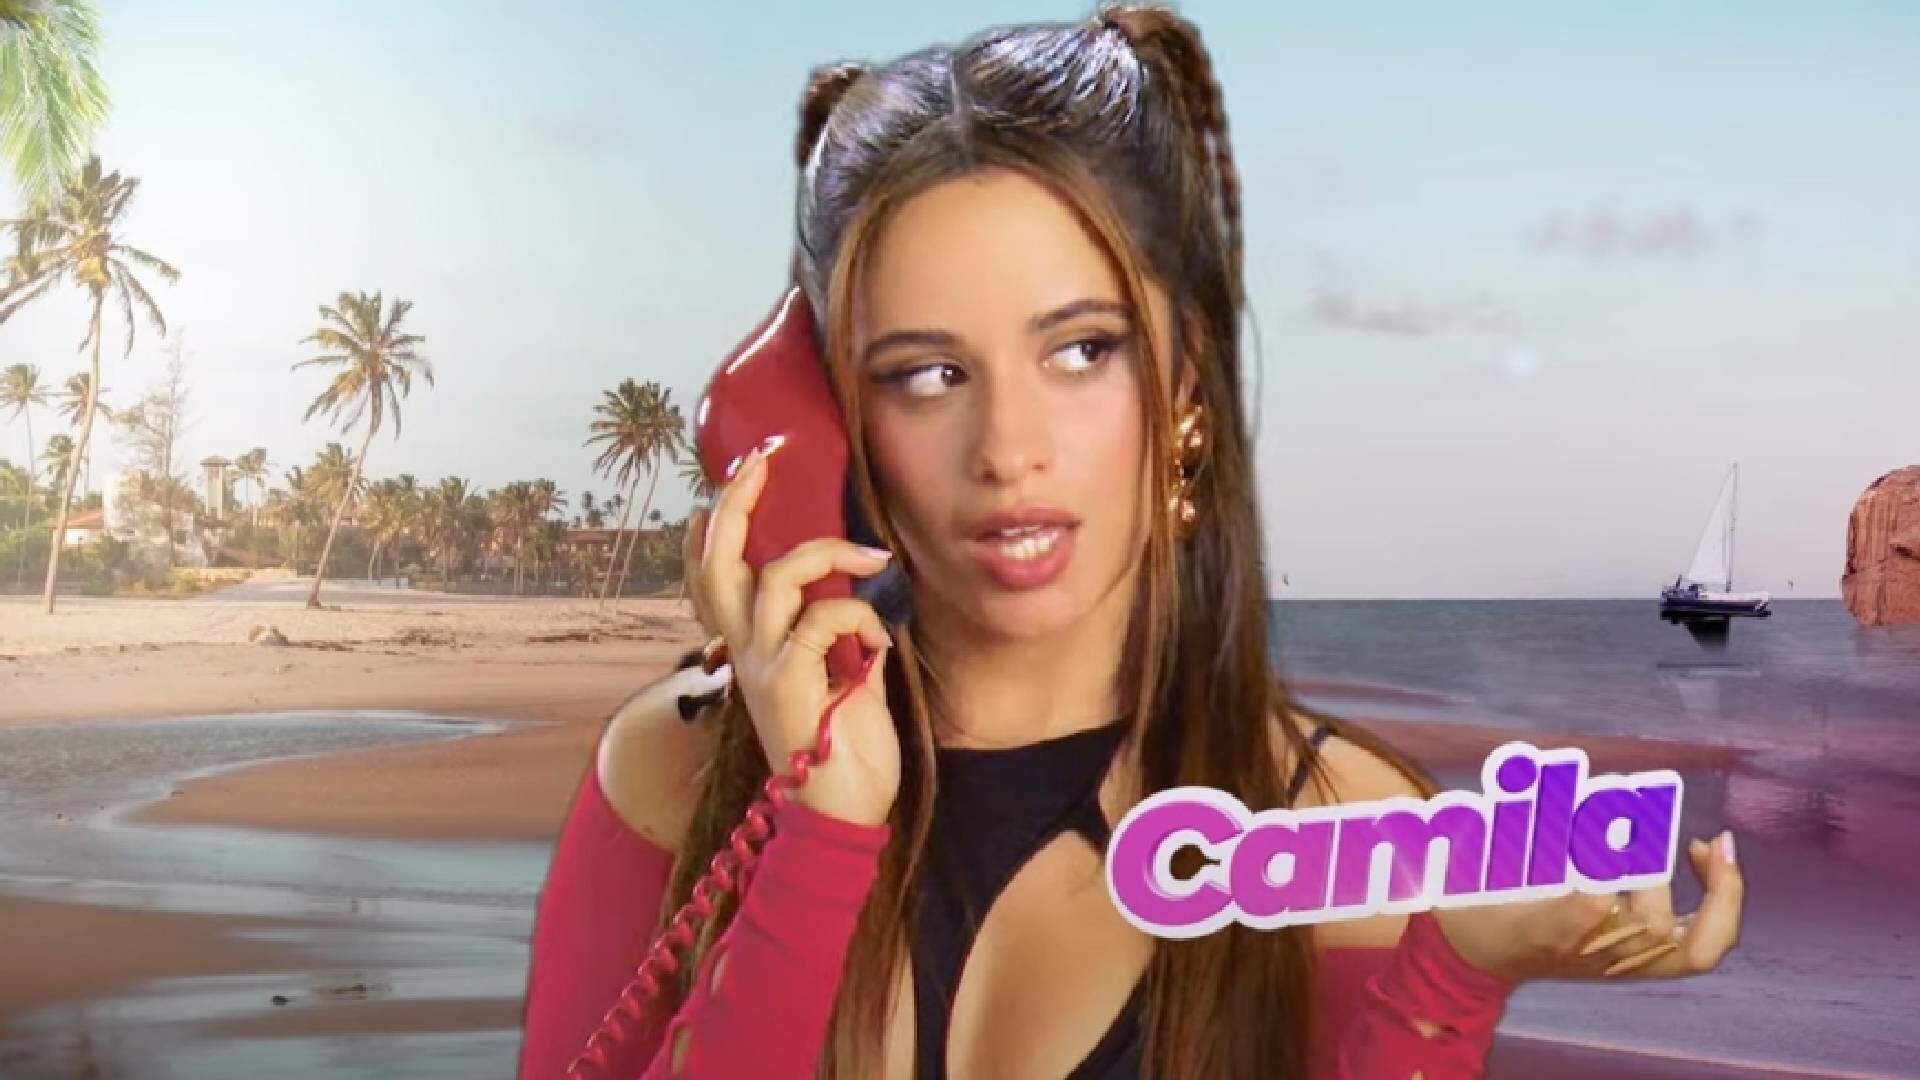 Camila Cabello lança novo clipe inspirado em famoso reality show e protagoniza cenas hilárias - Metropolitana FM